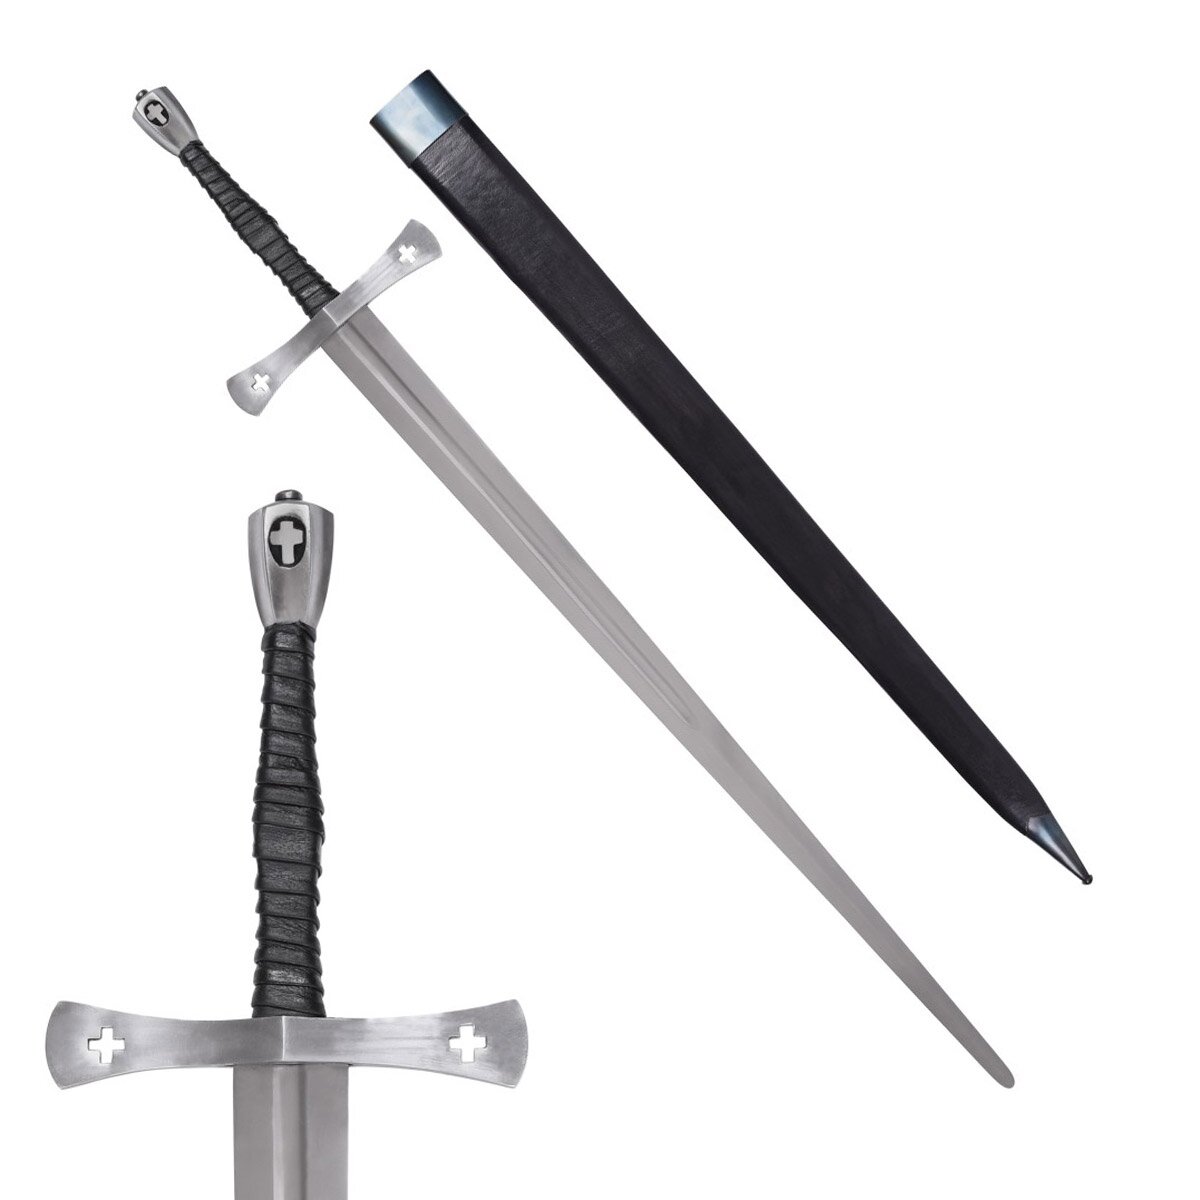 medieval sword type late medieval Tewkesbury 15th century...